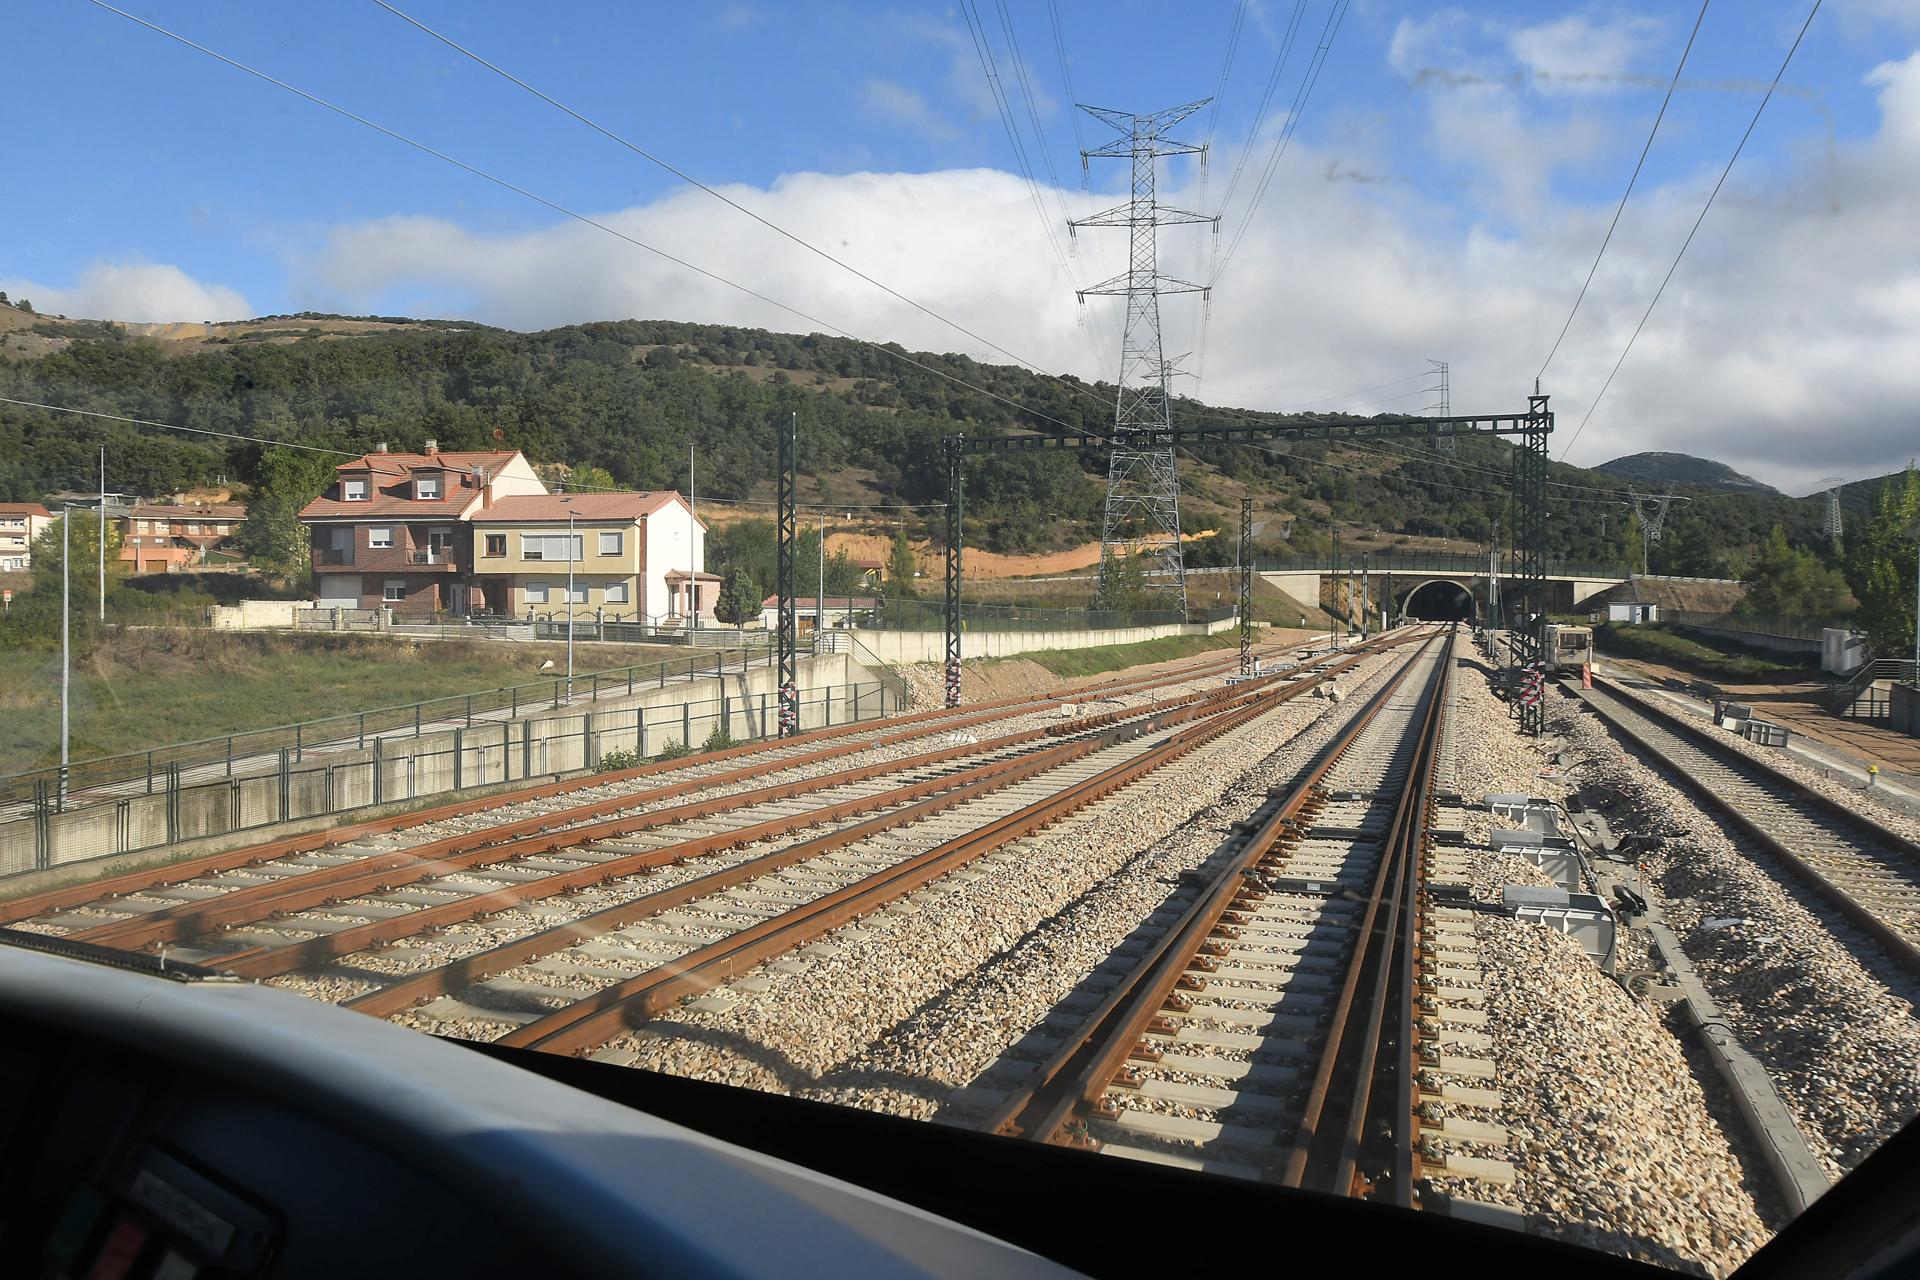 Dimiten dos altos cargos españoles por la polémica sobre el tamaño de unos trenes